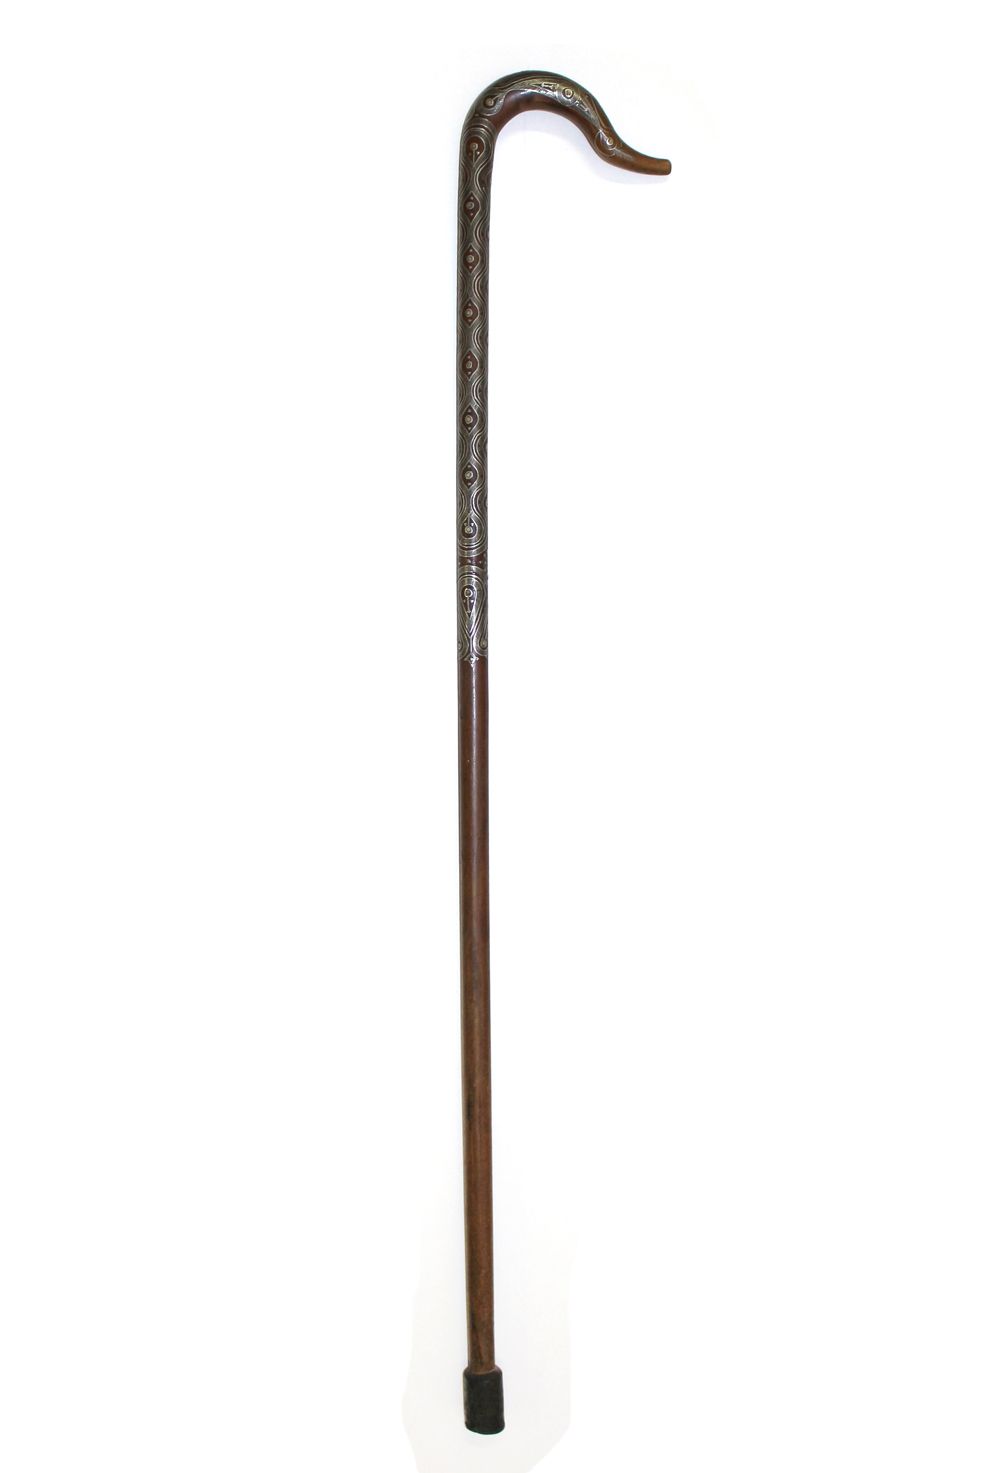 Spazierstock wohl Schlesien 有天鹅颈部造型的手杖。非常精细的银线与骨质镶嵌的作品。下方的银质镶嵌物有一小部分缺失。非常不寻常的物体。&hellip;